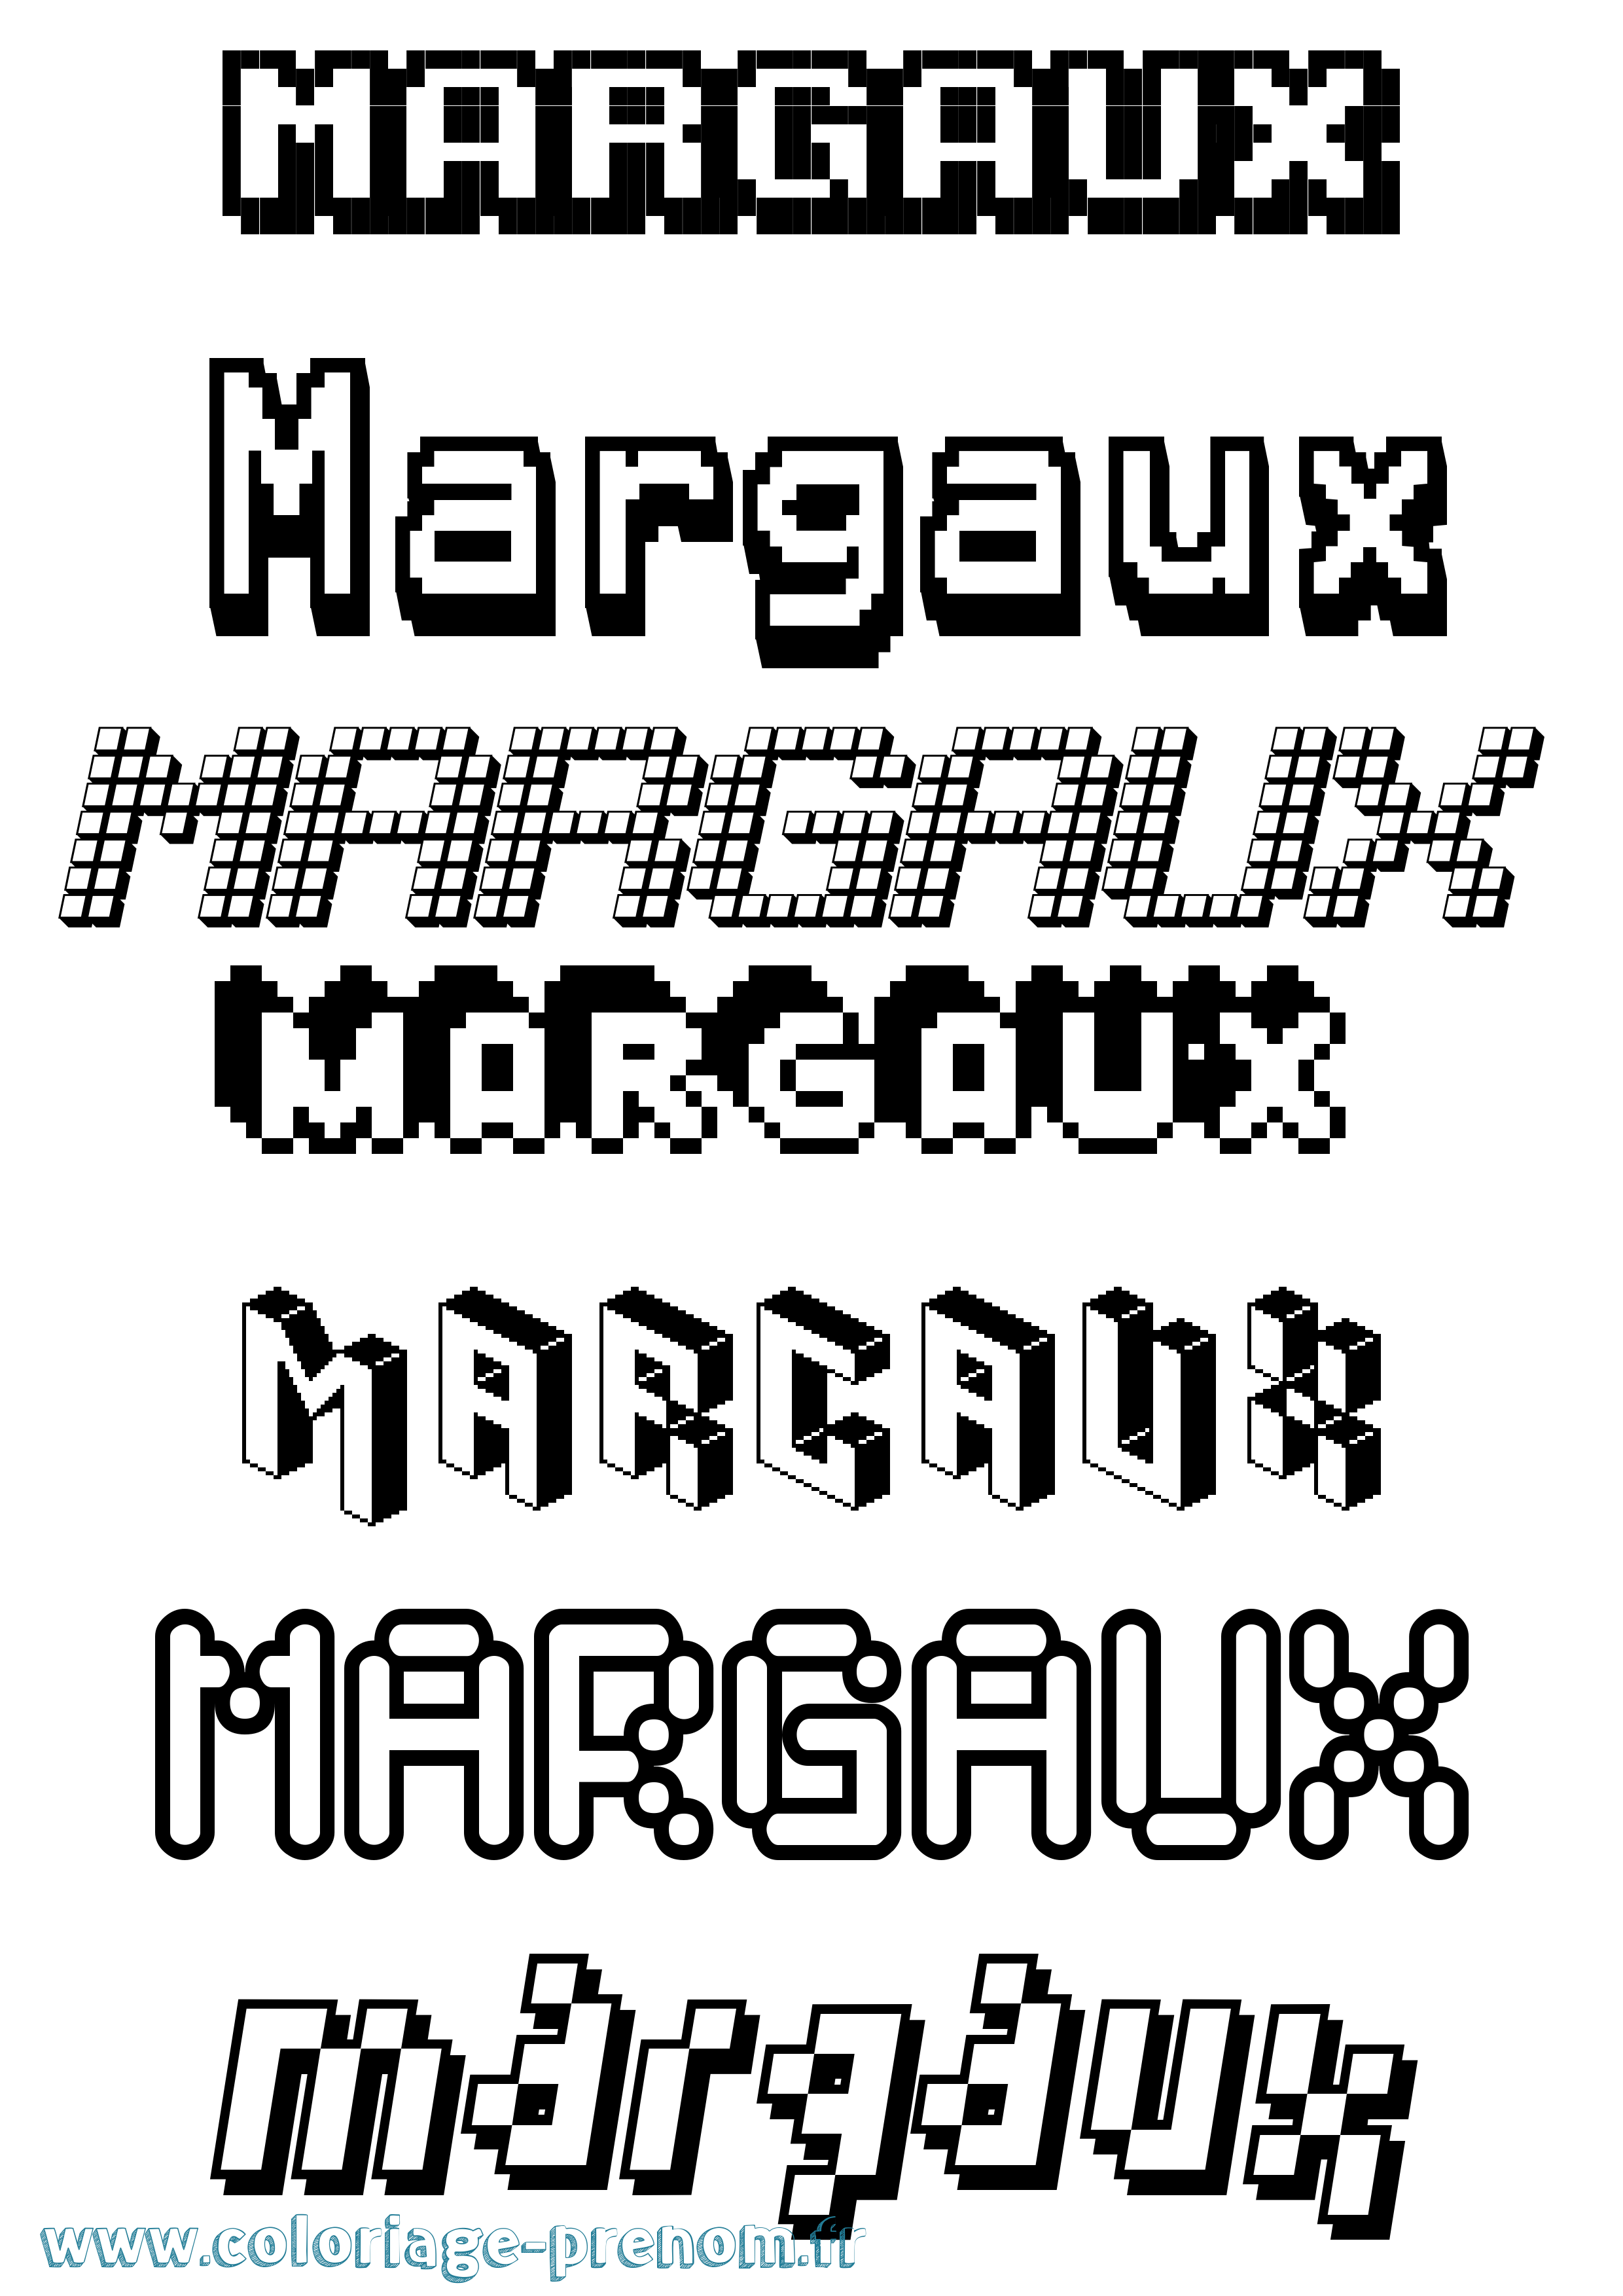 Coloriage prénom Margaux Pixel